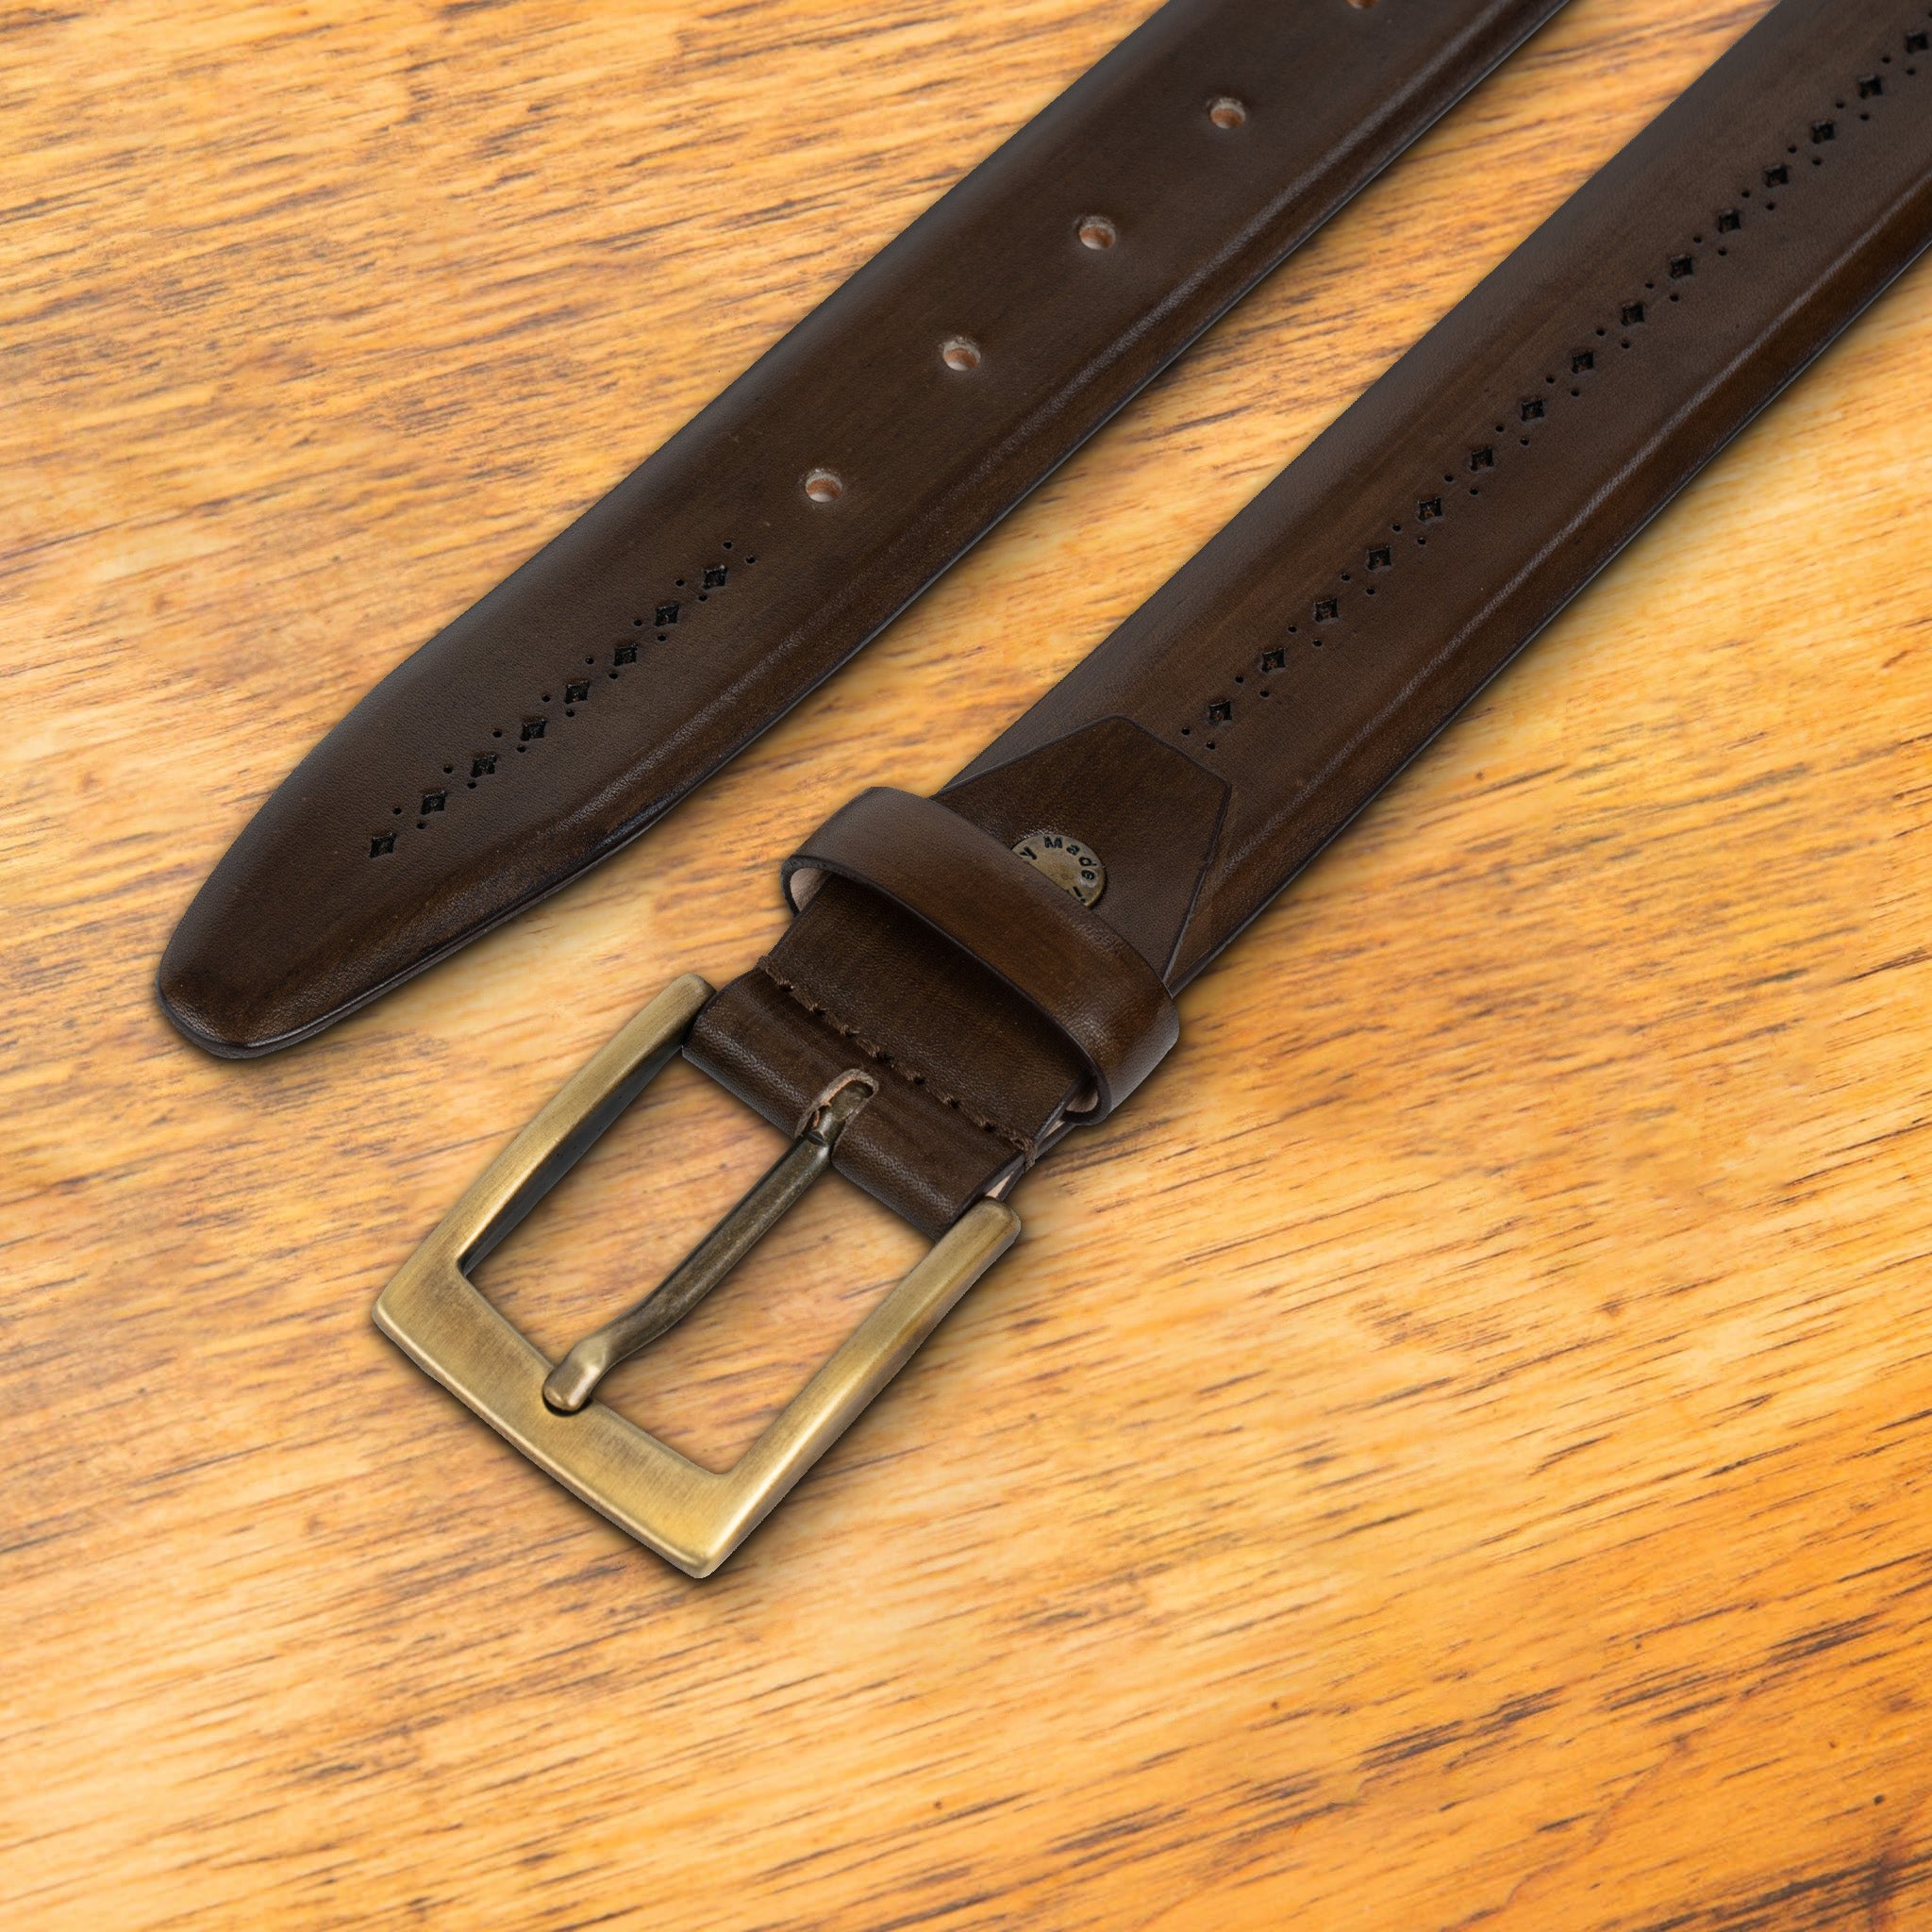 Calzoleria Toscana C1499 Saffiano Leather Belt